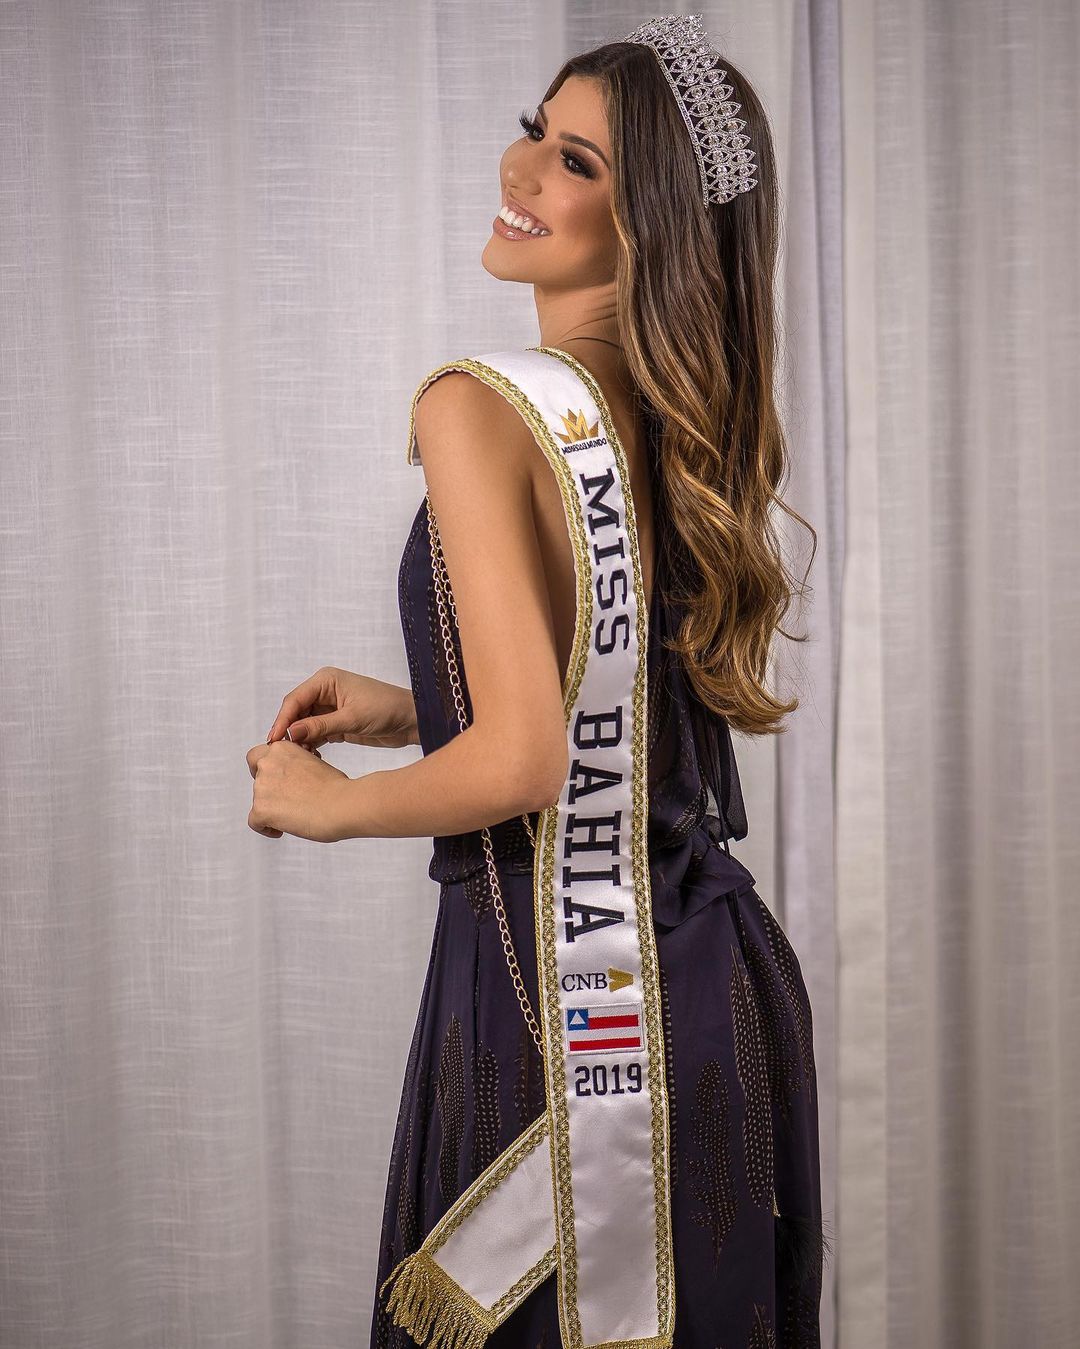 isabelle andrade, top 10 de miss brasil mundo 2019. - Página 3 82913431